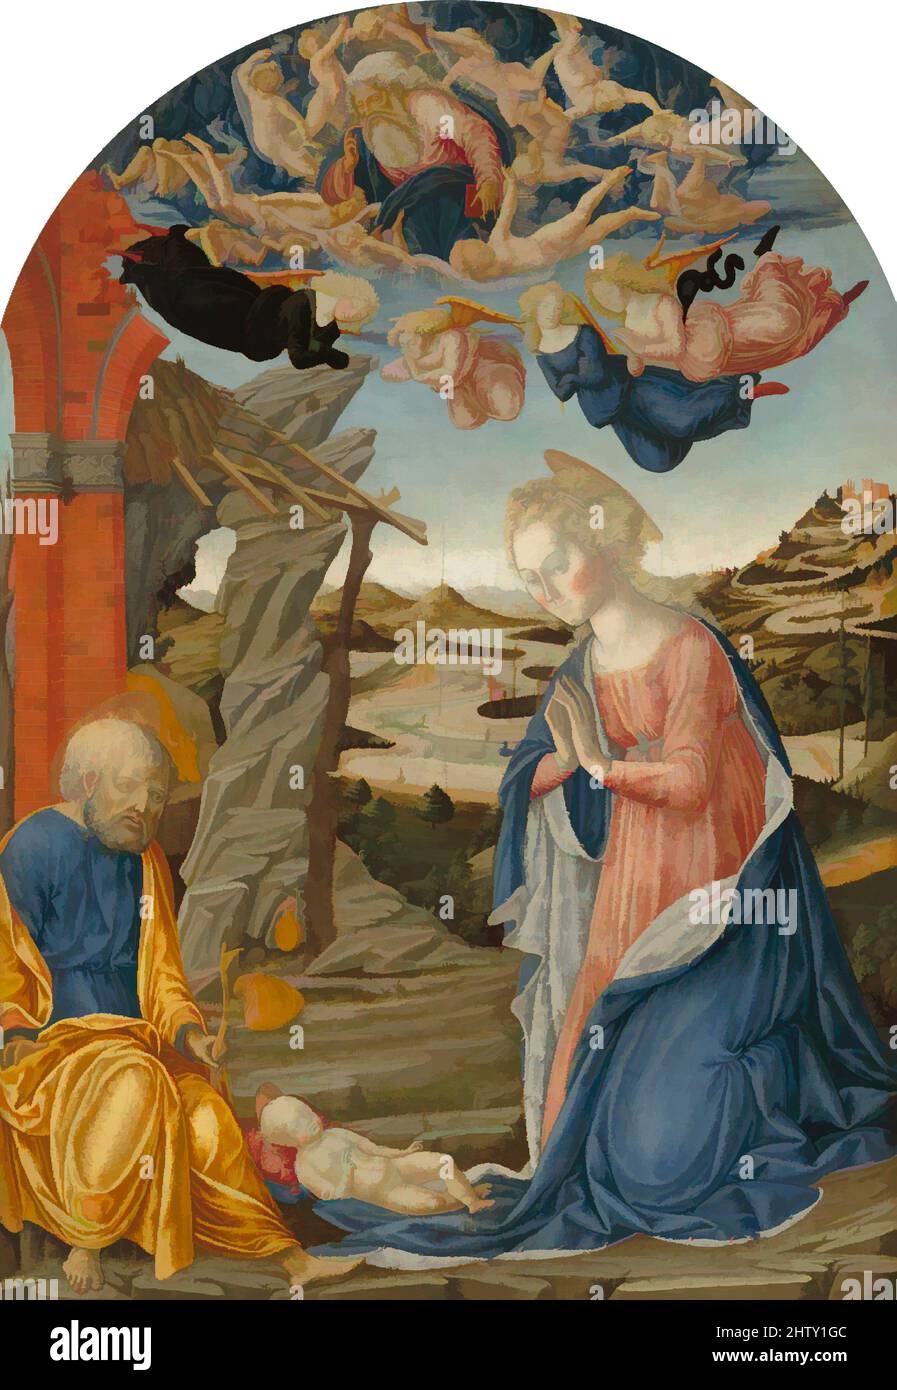 Art inspiré par la Nativité, Tempera sur bois, total 20 3/4 x 23 5/8 po. (52,7 x 60 cm); surface peinte 20 1/2 x 22 1/2 po (52,1 x 57,2 cm); surface peinte du travail réassemblé 33 1/4 po (84,5 cm) haut au centre, peintures, Francesco di Giorgio Martini (Italien, Sienne 1439–1501, oeuvres classiques modernisées par Artotop avec une touche de modernité. Formes, couleur et valeur, impact visuel accrocheur sur l'art émotions par la liberté d'œuvres d'art d'une manière contemporaine. Un message intemporel qui cherche une nouvelle direction créative. Artistes qui se tournent vers le support numérique et créent le NFT Artotop Banque D'Images